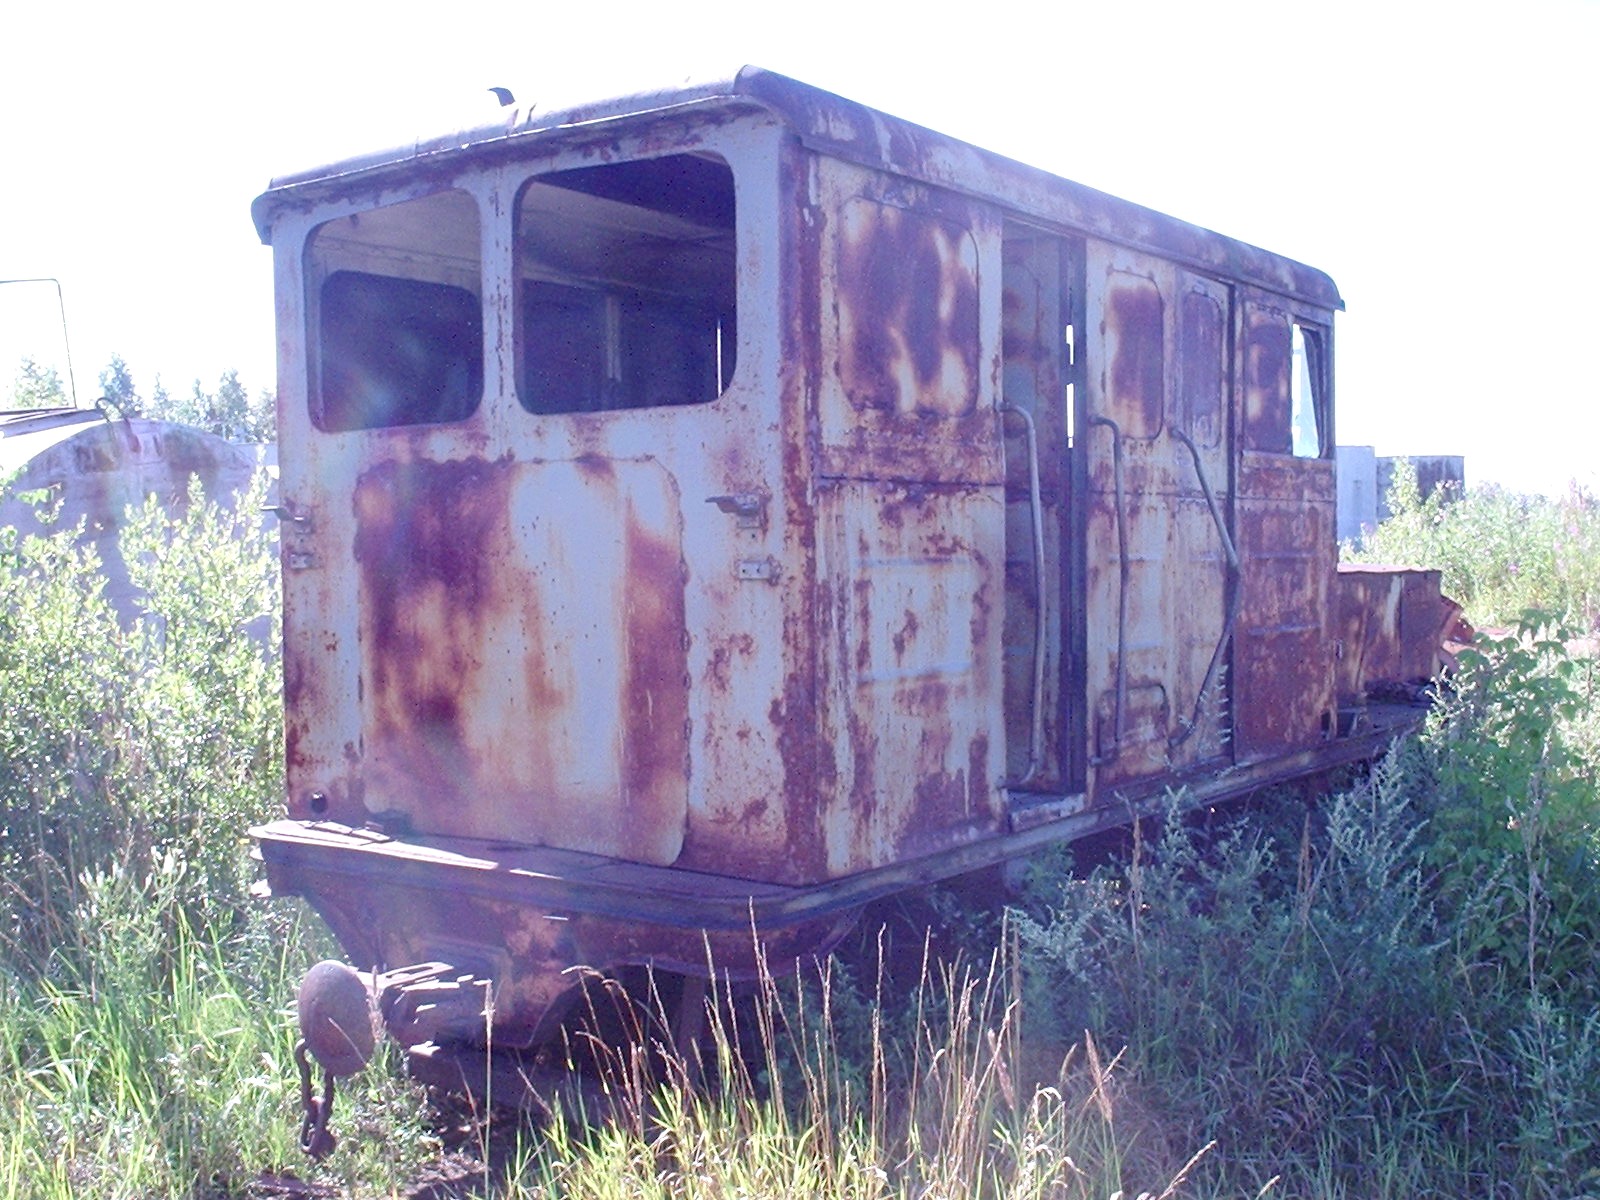 Узкоколейная железная дорога Васильевского предприятия промышленного железнодорожного транспорта  — фотографии, сделанные в 2005 году (часть 8)